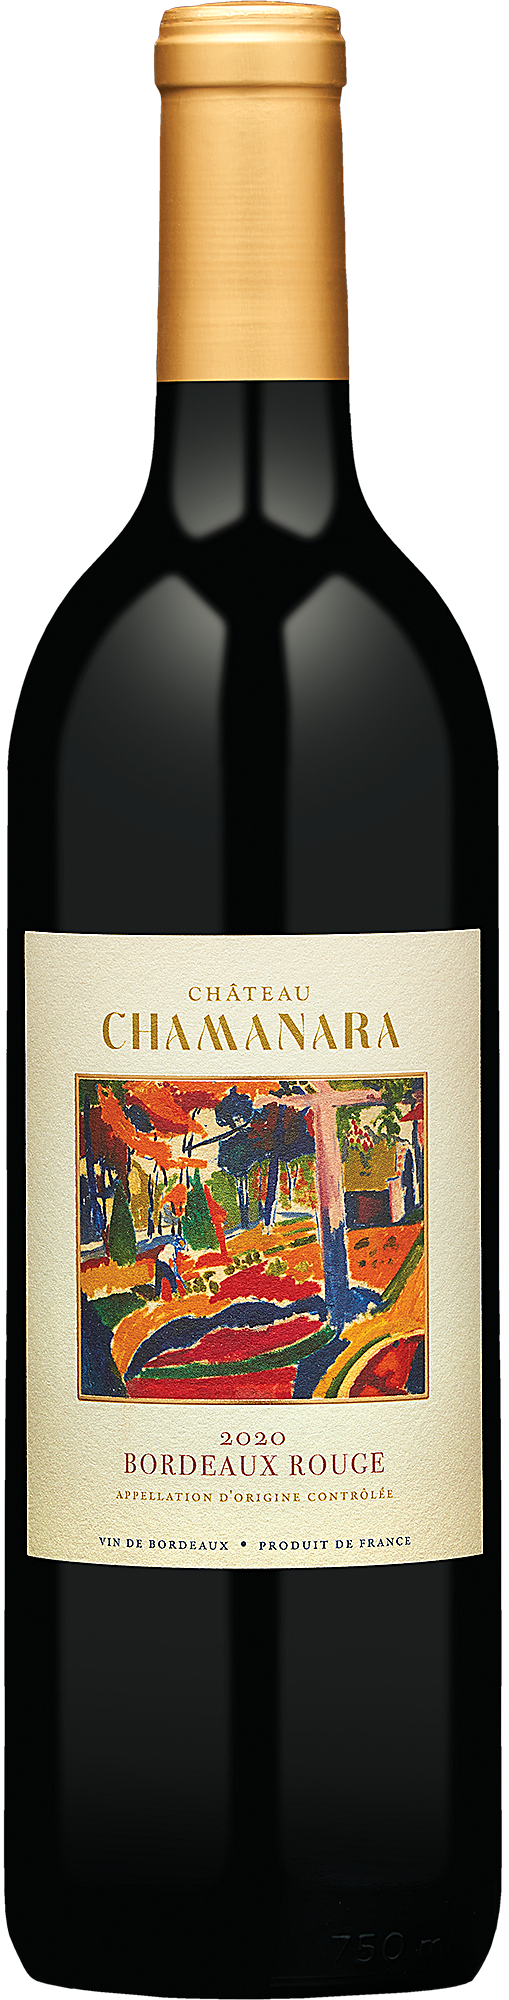 2020 Château Chamanara Bordeaux Rouge